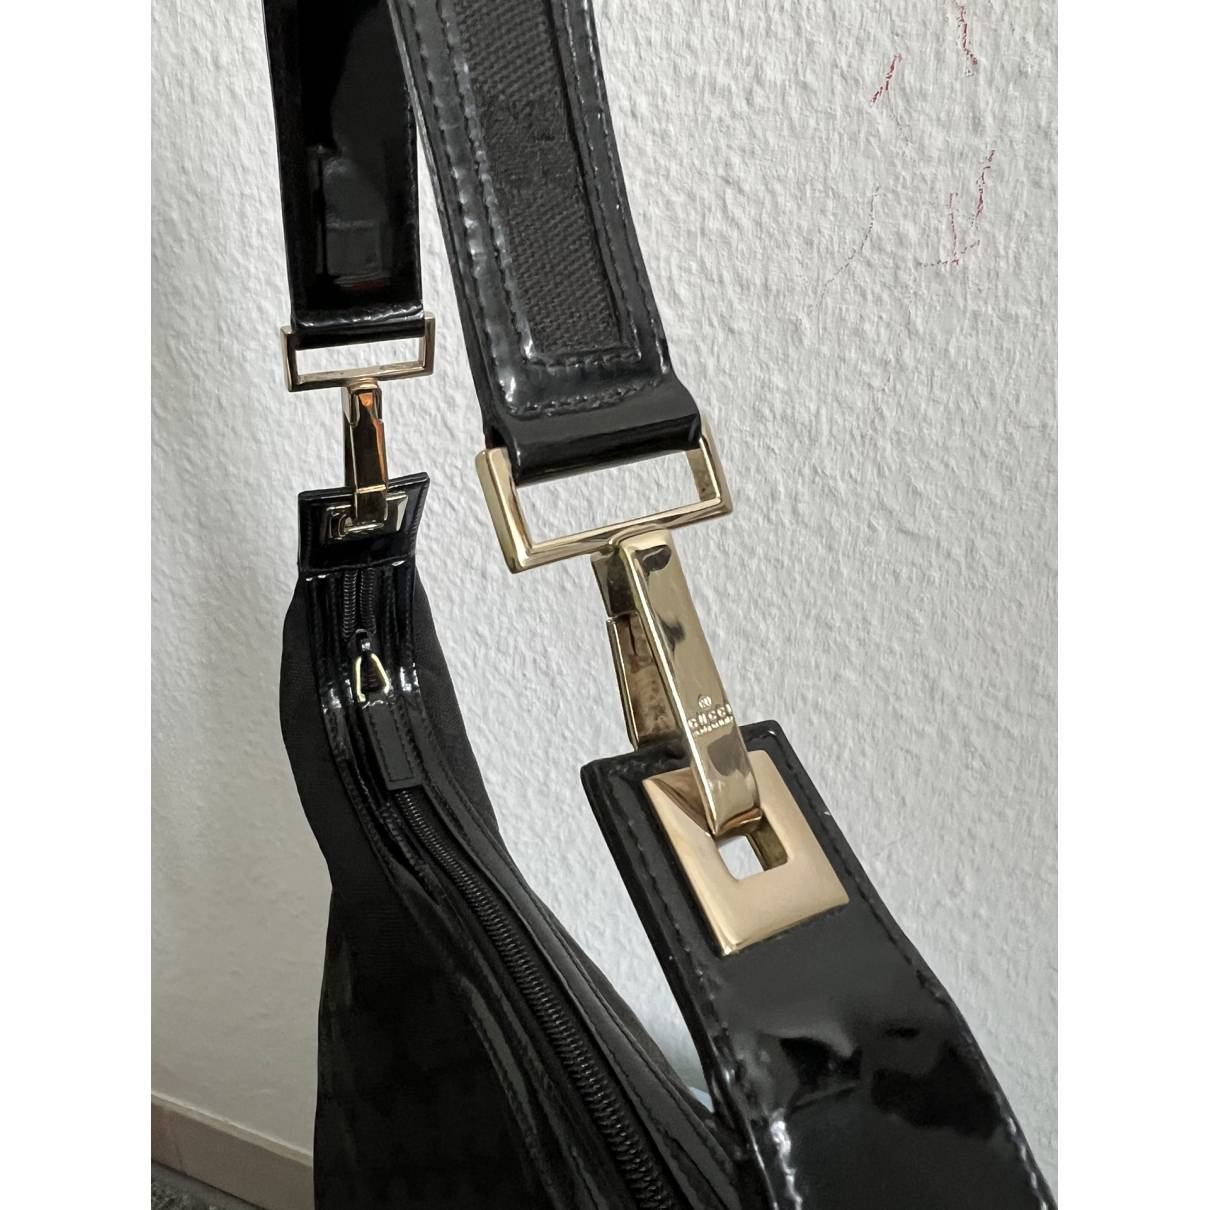 Galaxy cloth handbag Gucci - Vintage